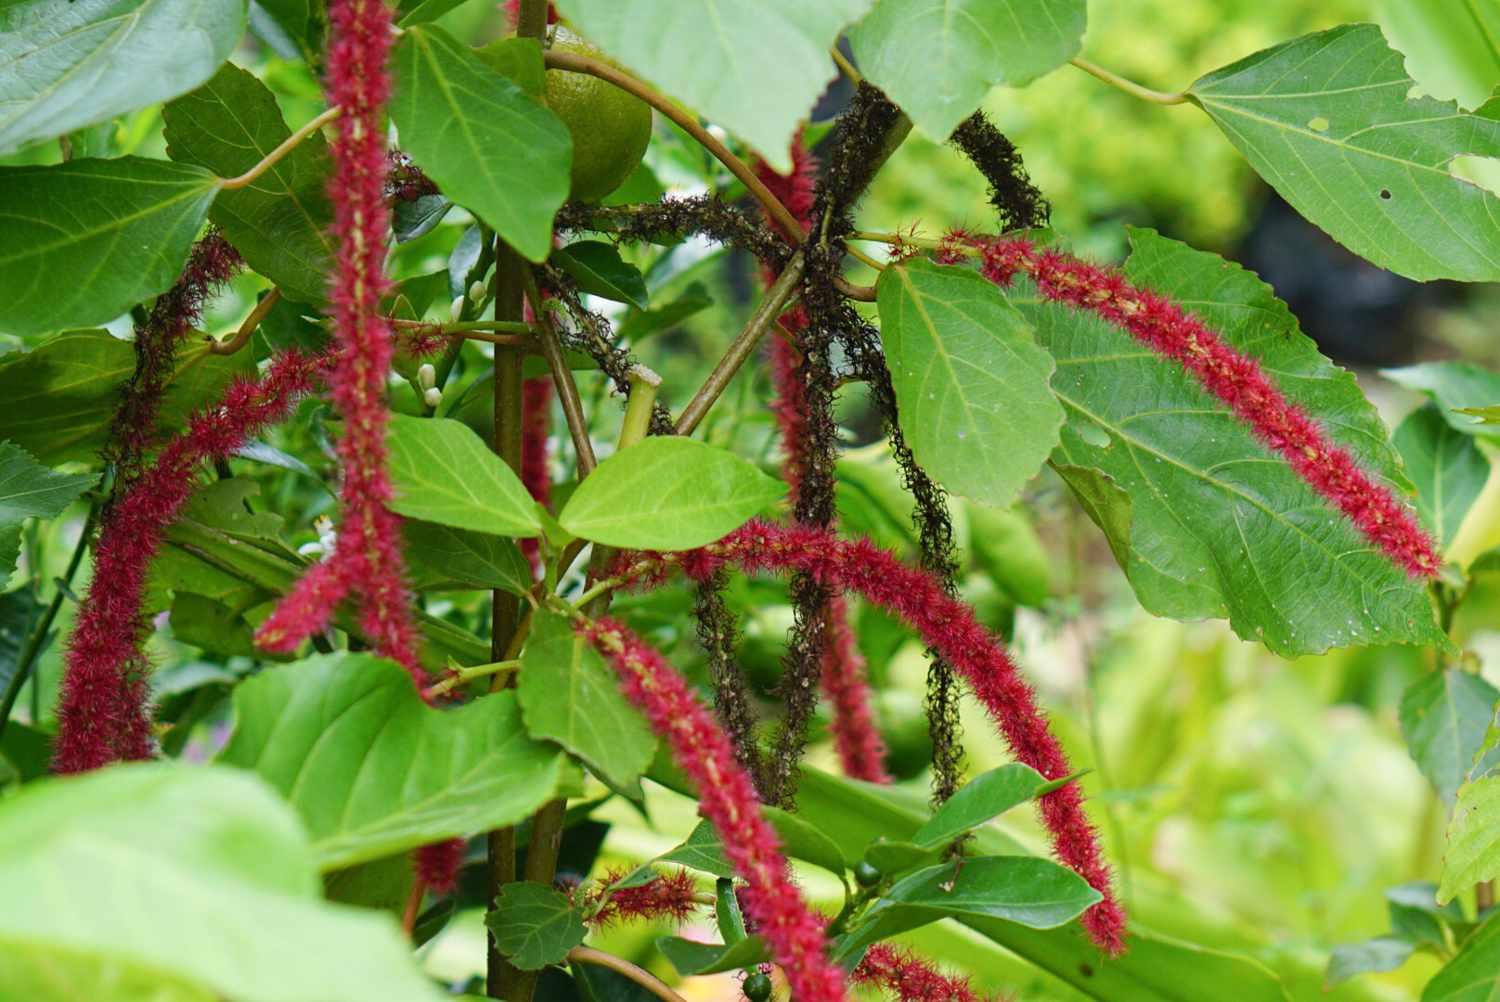 Acalypha-Pflanze mit roten flaschenbürstenartigen Blüten, die zwischen großen Blättern hängen